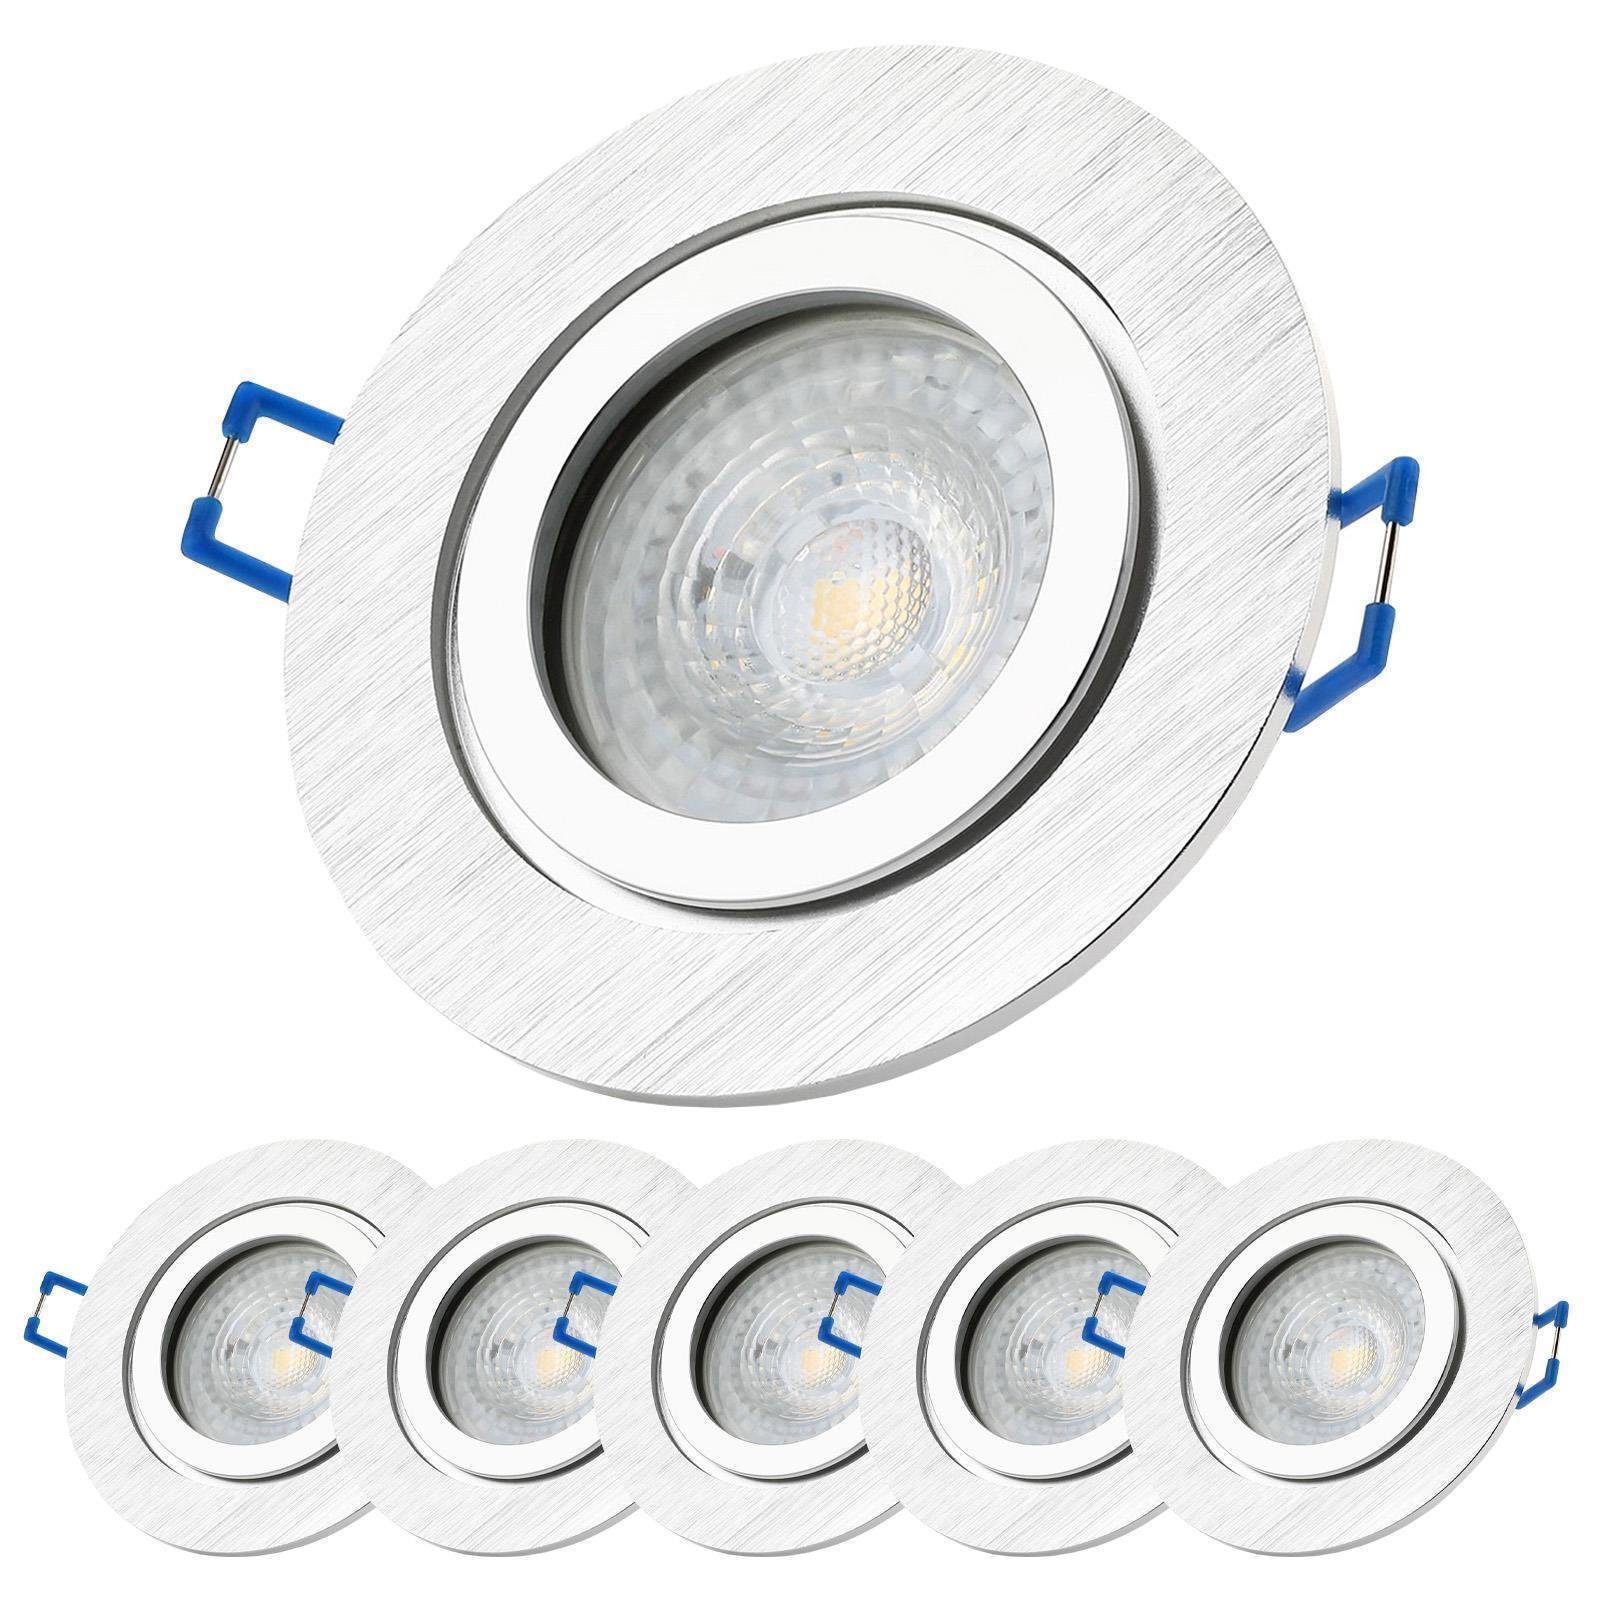 Sweet LED LED Einbaustrahler spots Deckenstrahler,Einbauleuchten IP44 badezimmer - warmweiß, Aluminium Bad GU10 3000K wechselbar, Leuchtmittel stück, 6 Deckenspots, 7W